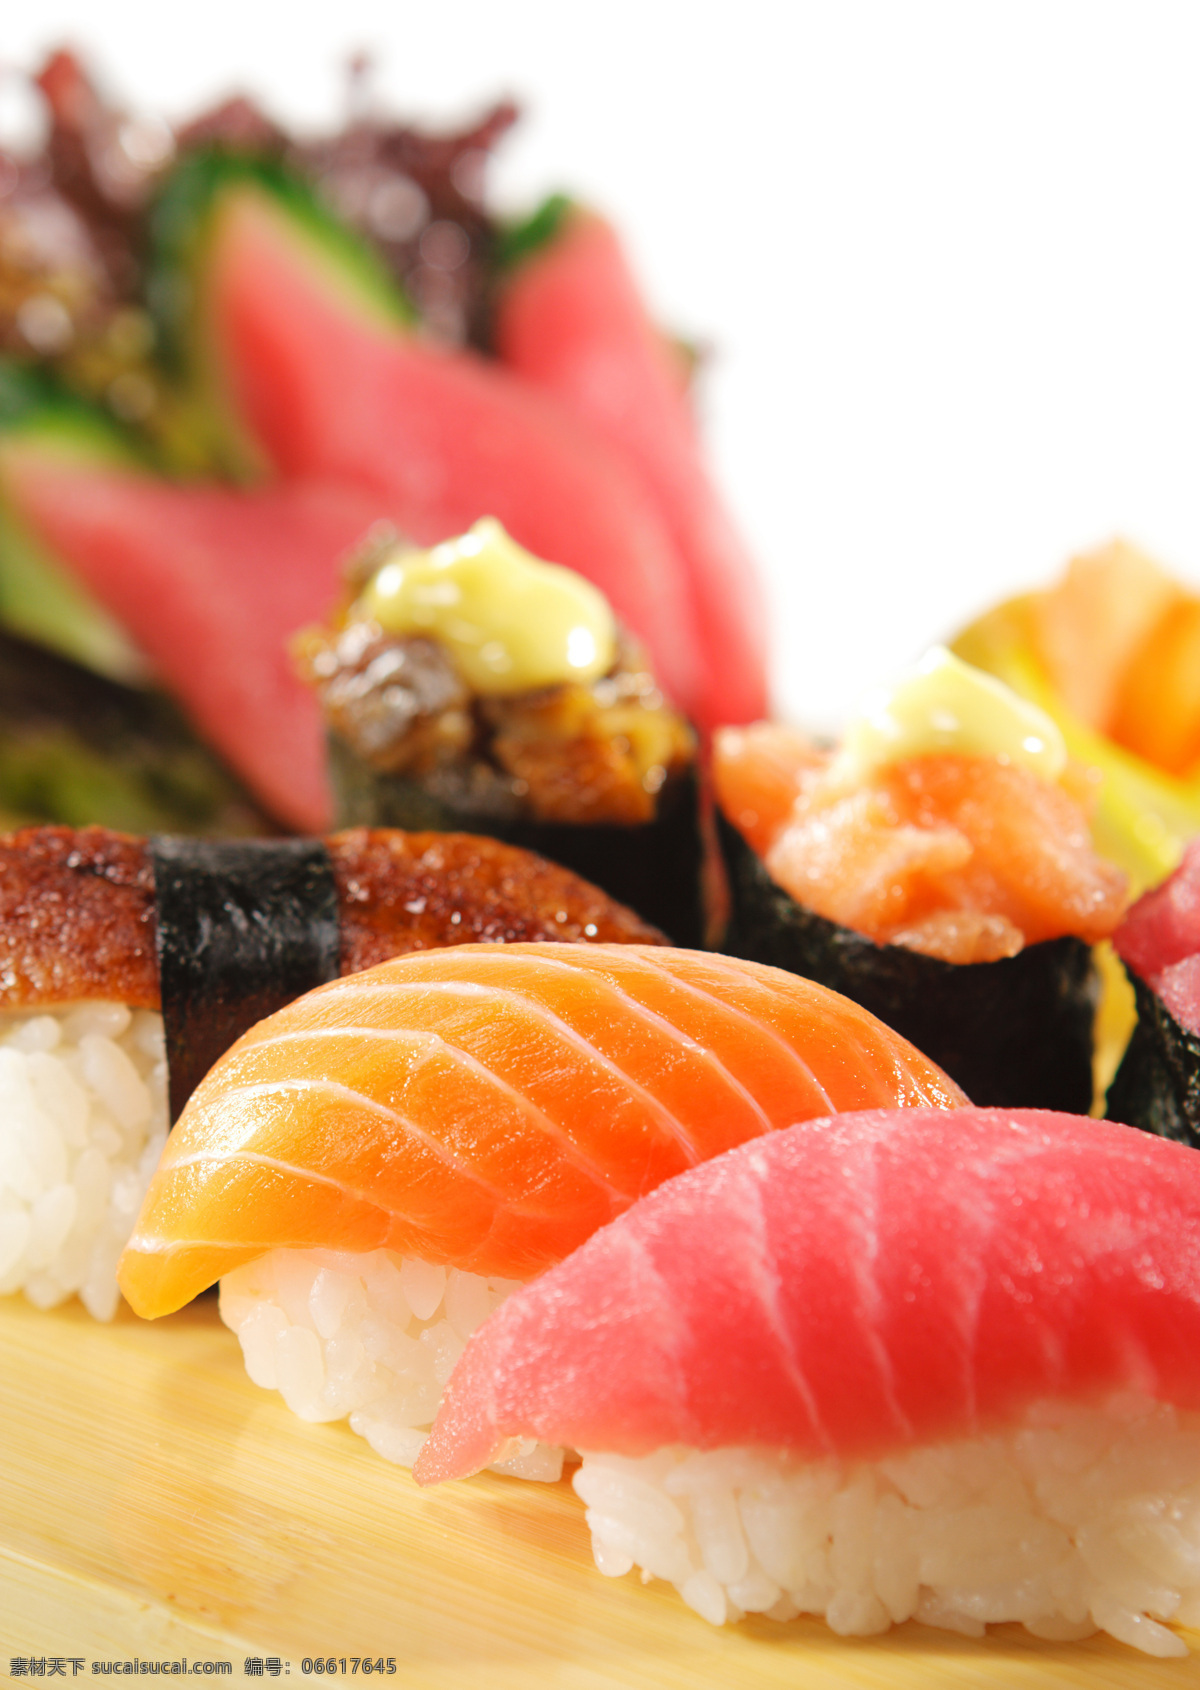 美味 三文鱼 寿司 调料 诱人美食 食物原料 食材 原料 食物摄影 外国美 食餐饮美食 餐饮美食 西餐美食